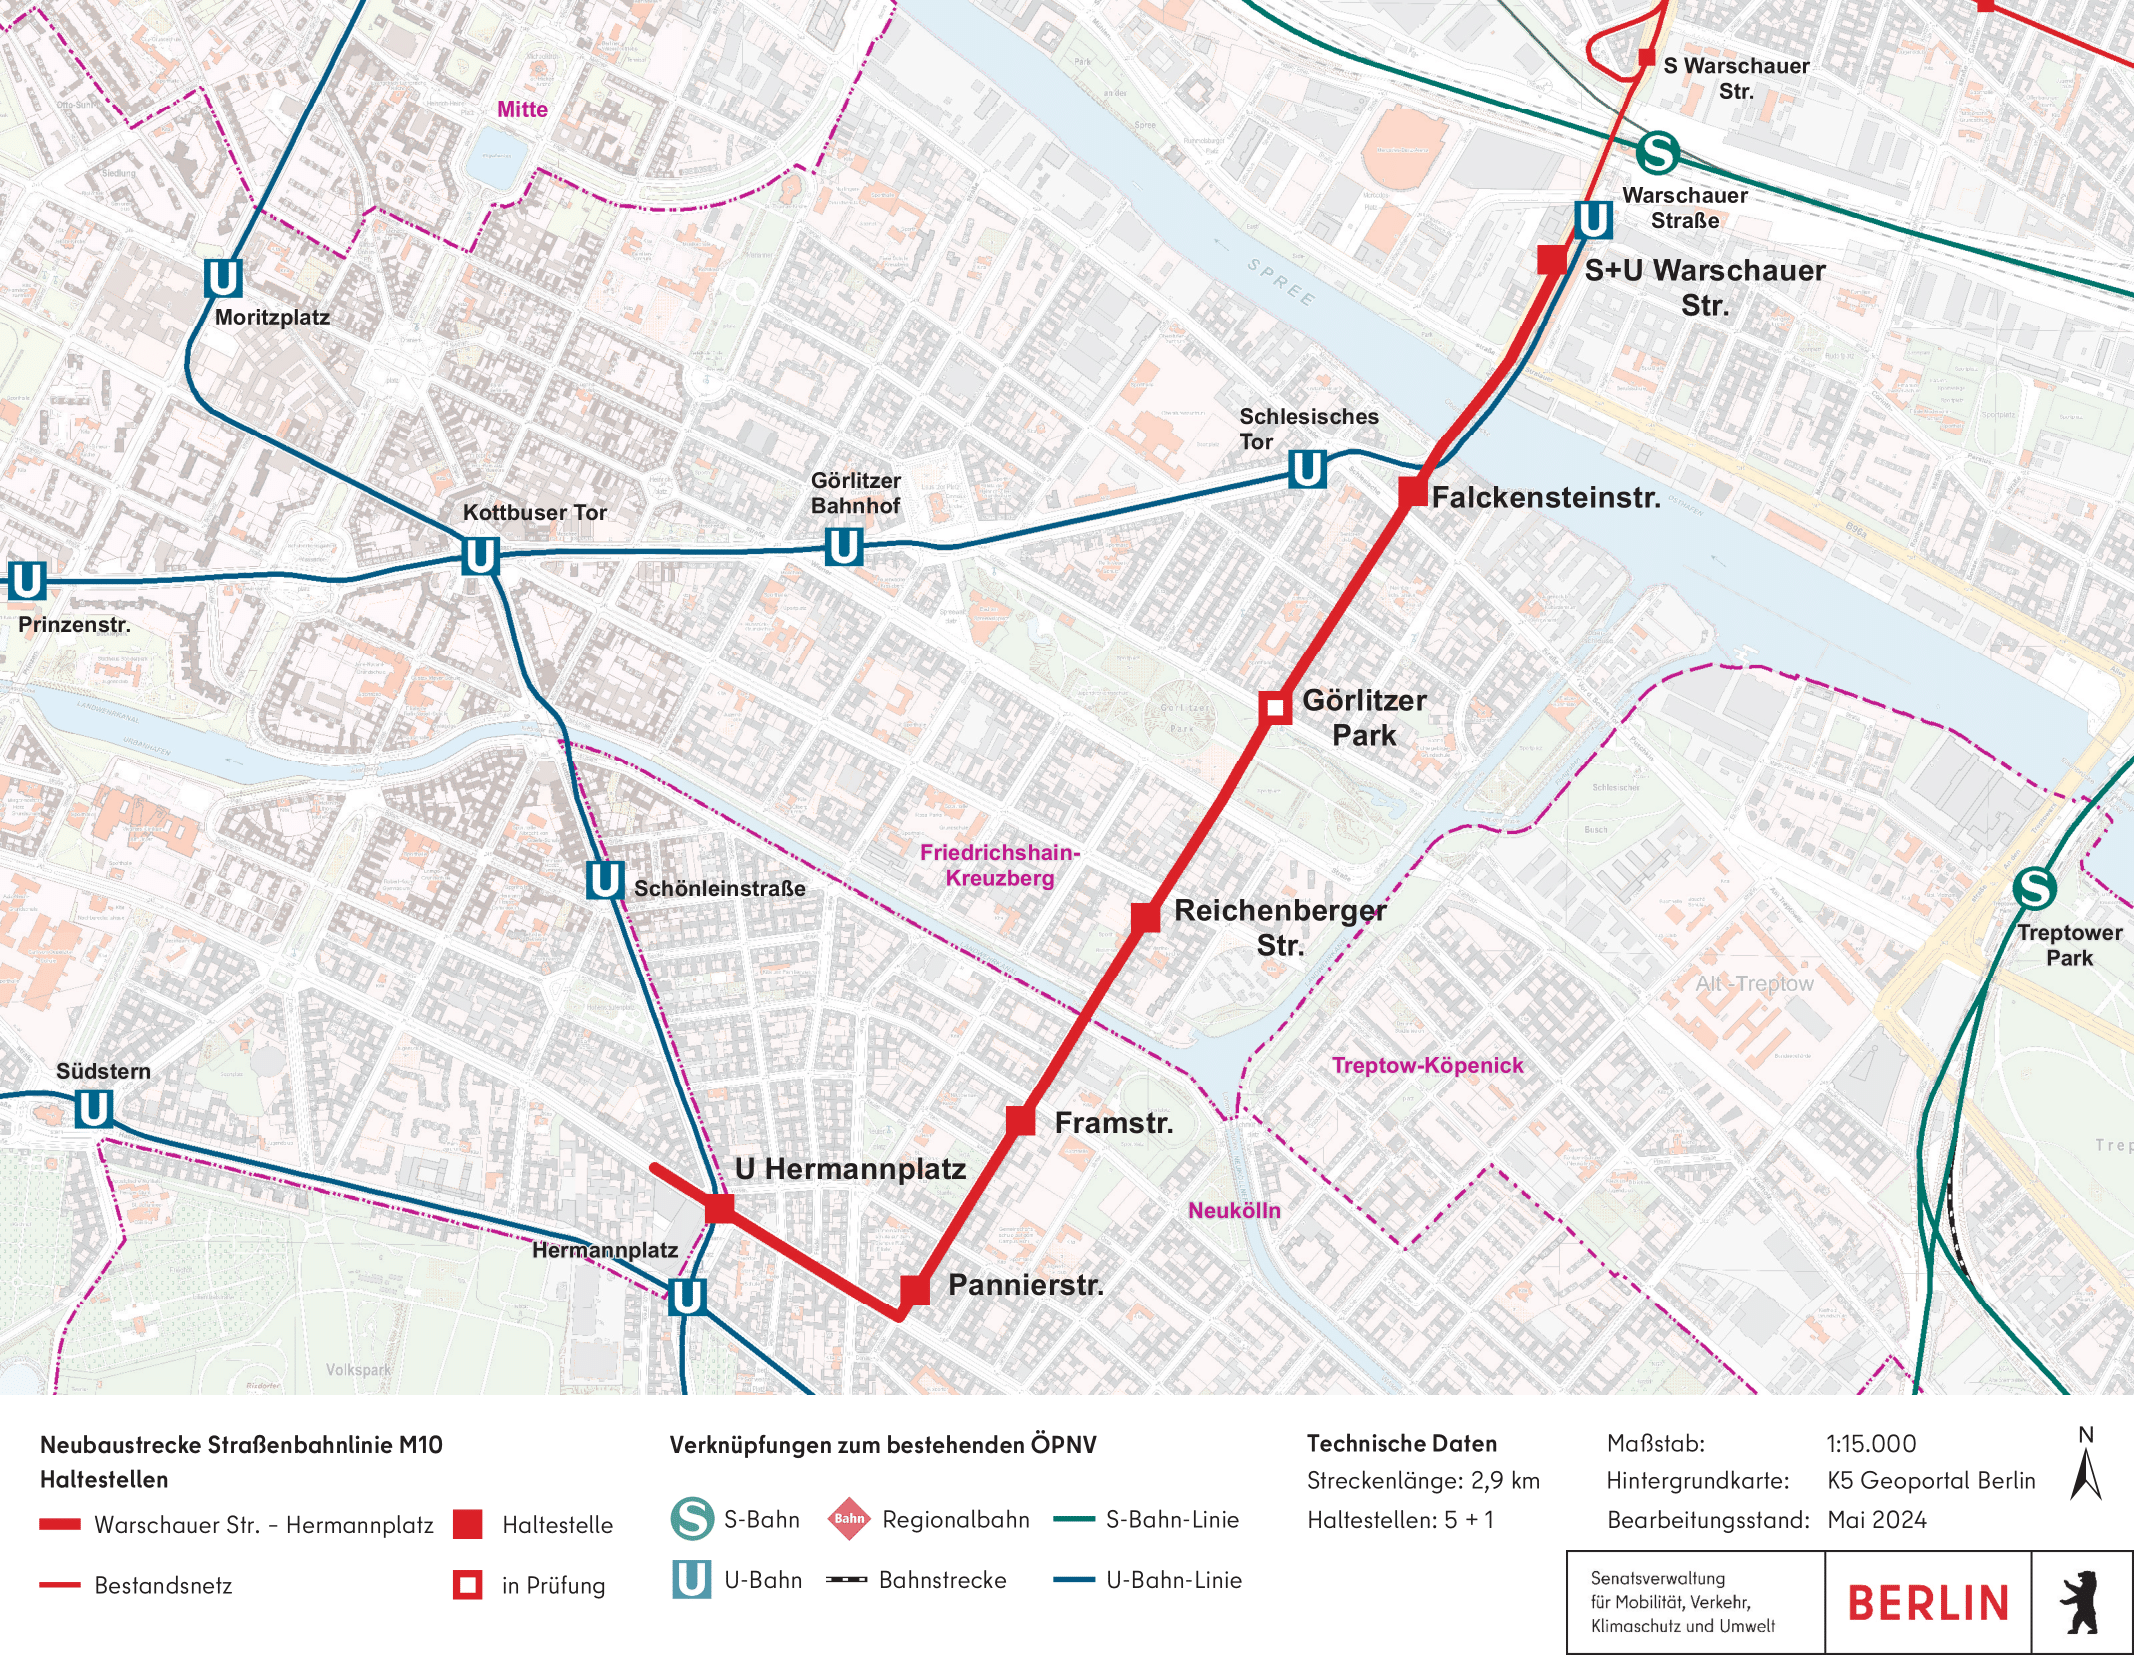 Die Abbildung zeigt die planerisch zu bevorzugende Streckenvariante. Sie verläuft geradlinig in Richtung Südwest vom S+U Warschauer Straße über die Oberbaumbrücke, die Falckenstreinstraße, durch den Görlitzer Park, über die Pannierstraße und biegt dann in Nordwestlicher Richtung die Sonnenallee ein und führt von dort bis zum Hermannplatz.